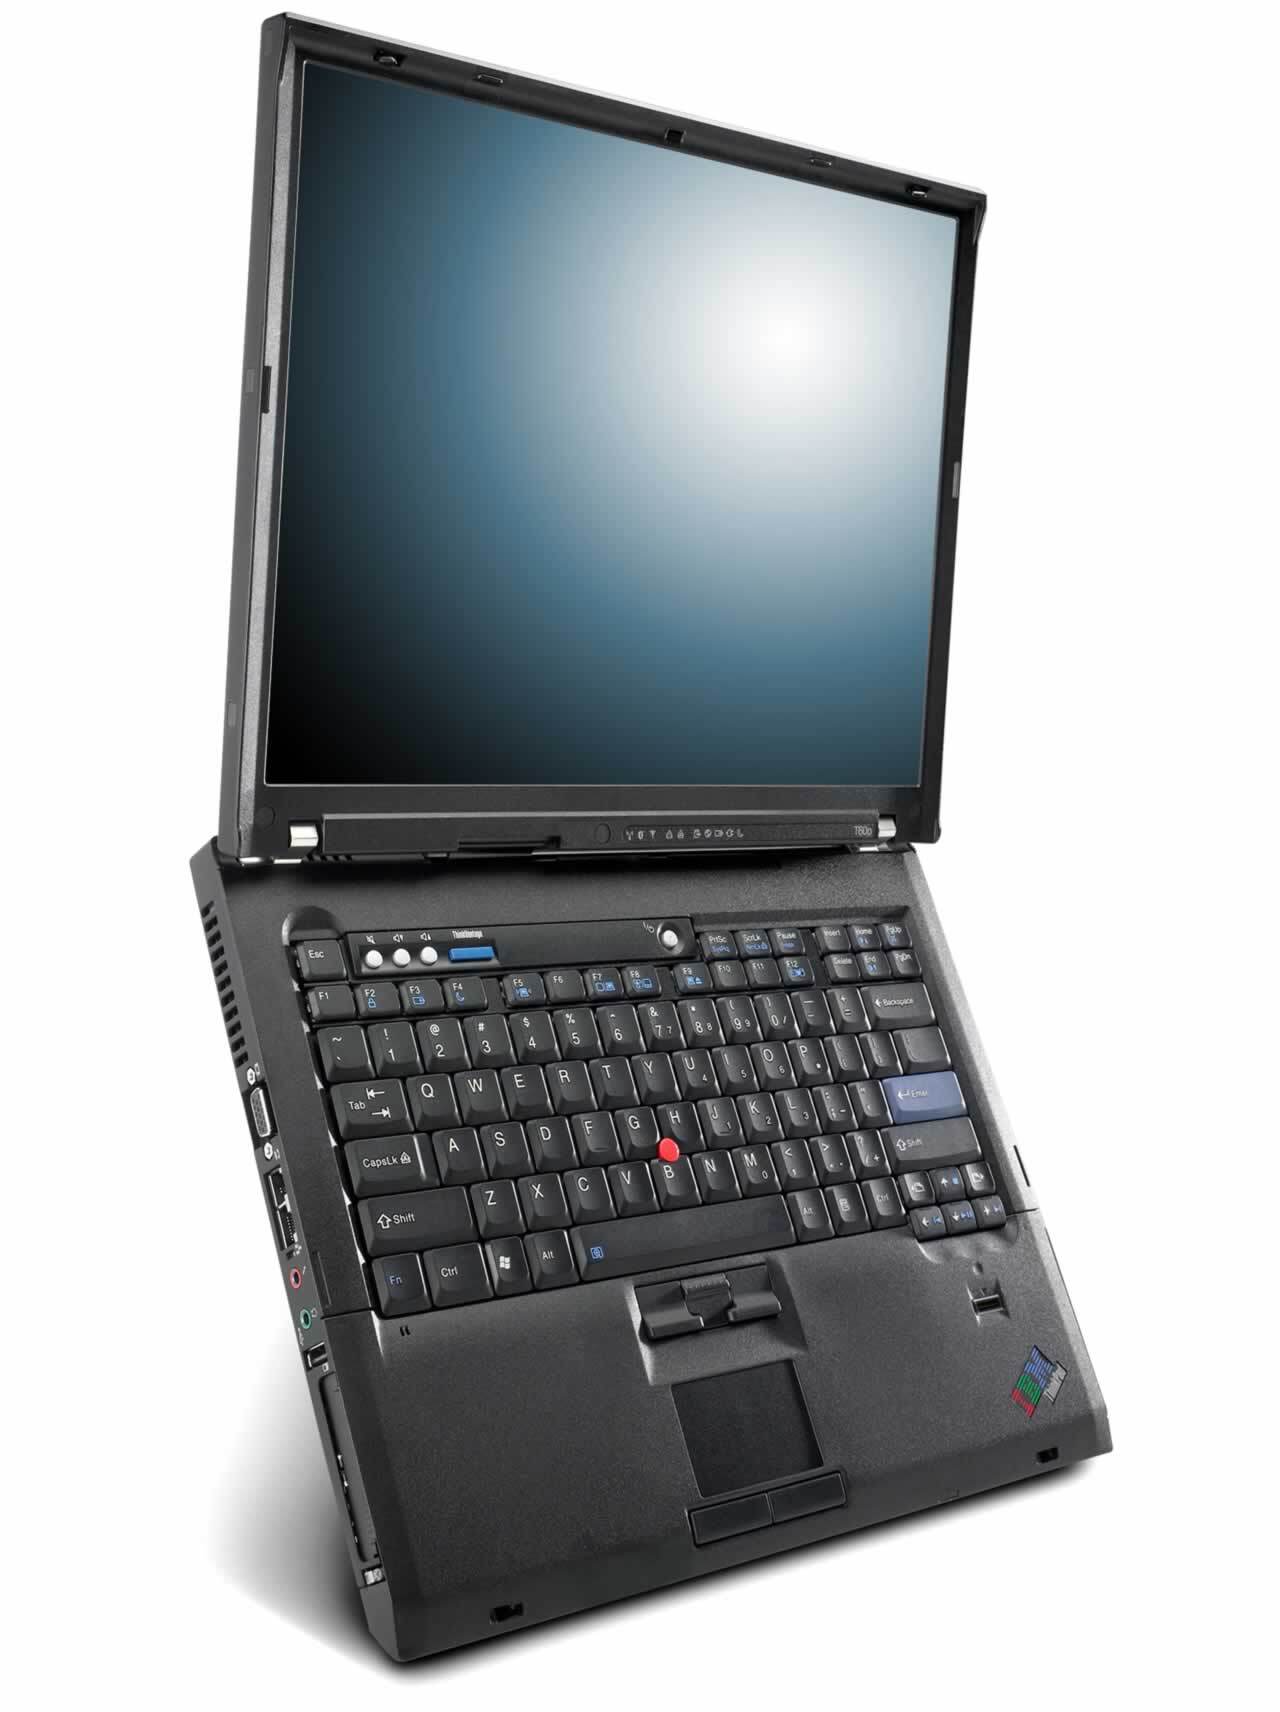 Laptop IBM ThinkPad T60 (20074CU) - Intel Core Duo T2400 1.83Ghz, 512MB RAM, 60GB HDD, VGA ATI Radeon X1300, 14.1 inch